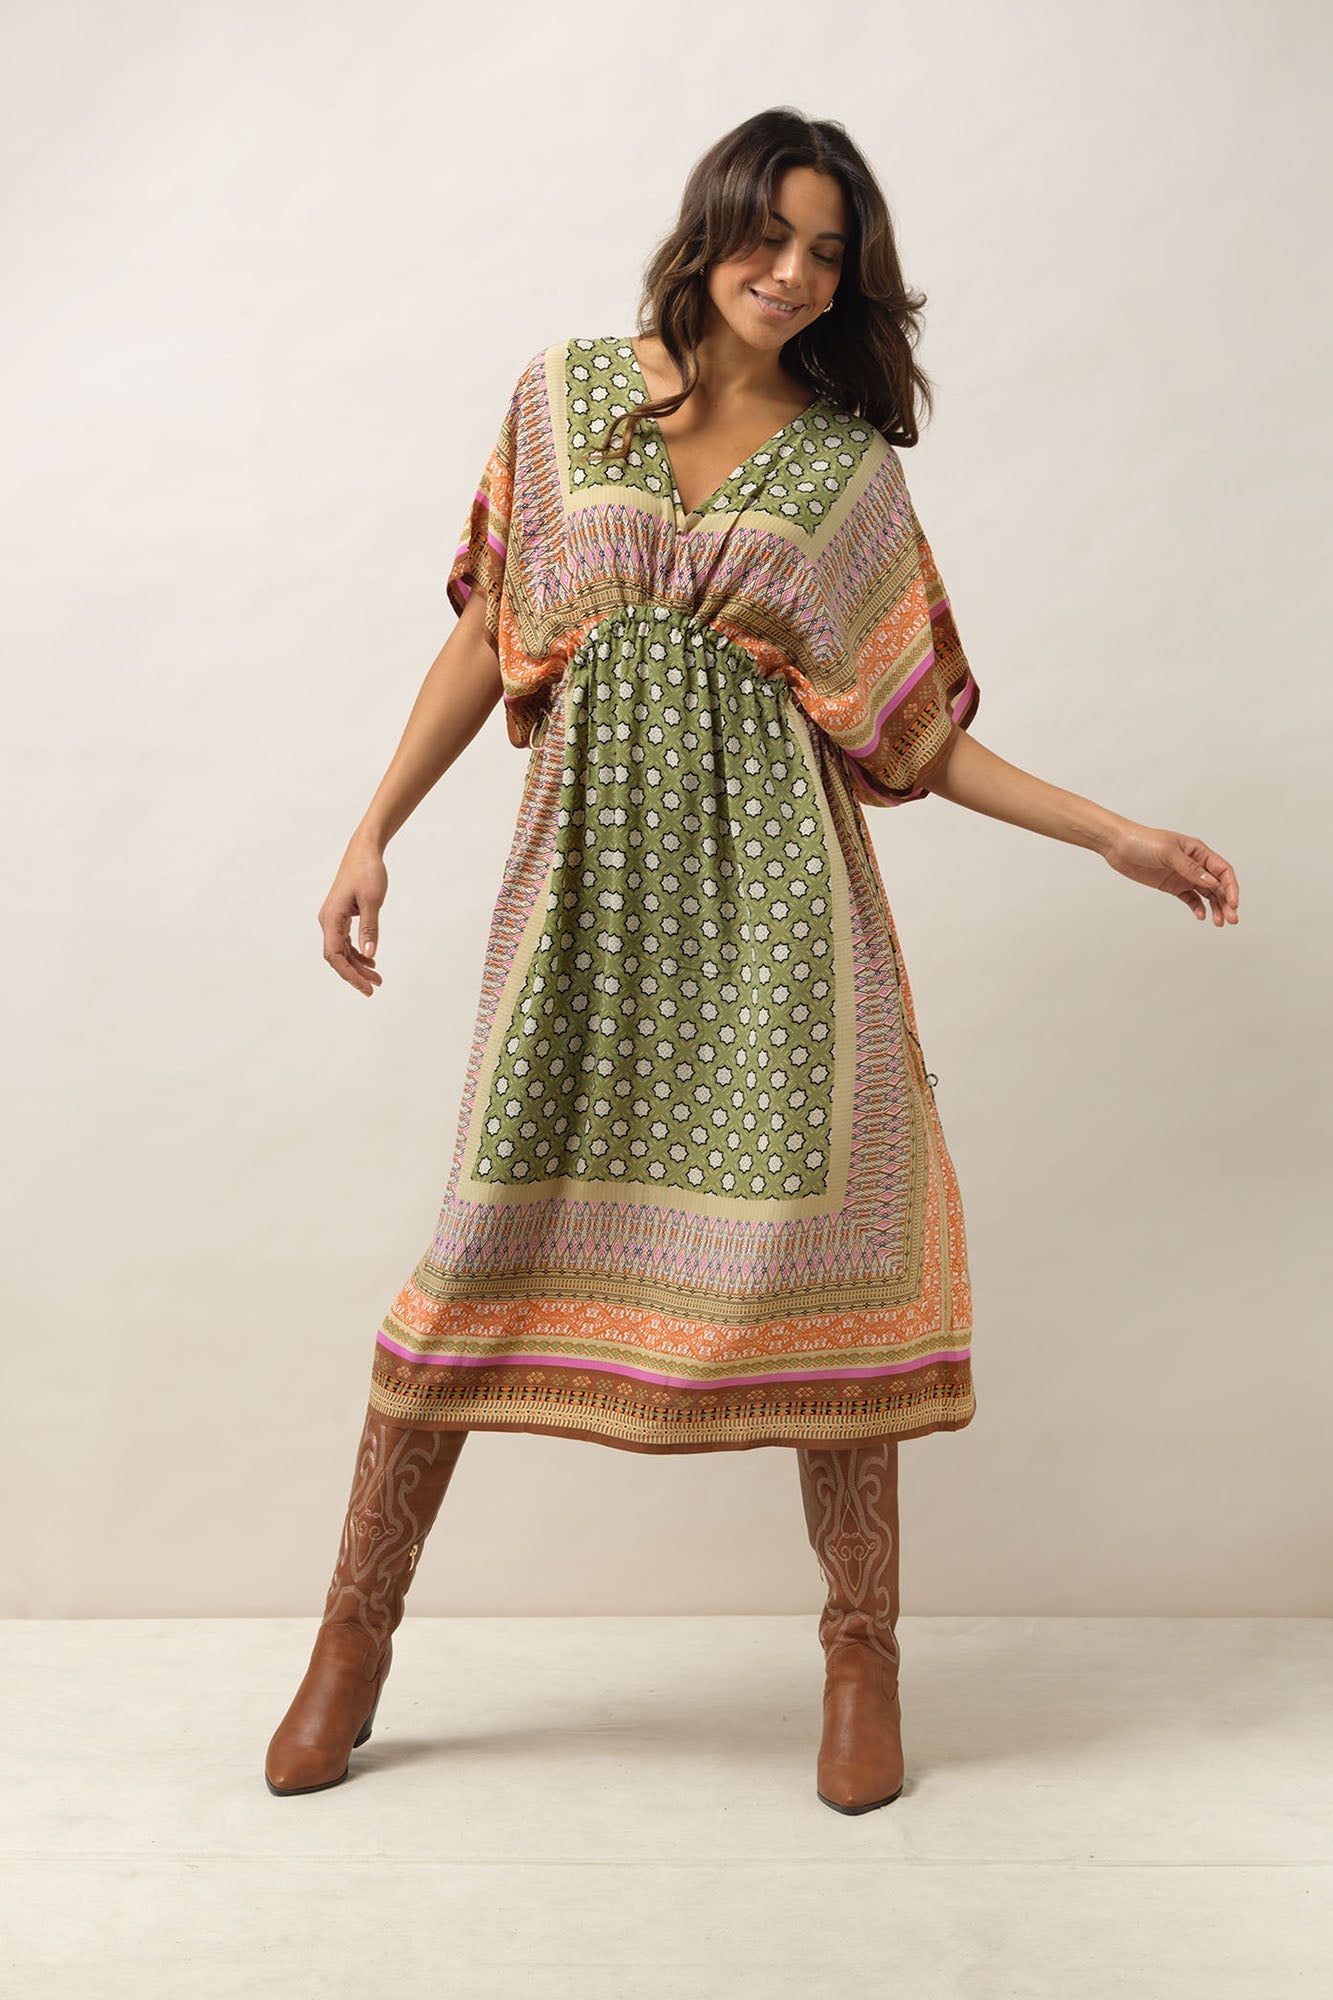 Moorish String Dress